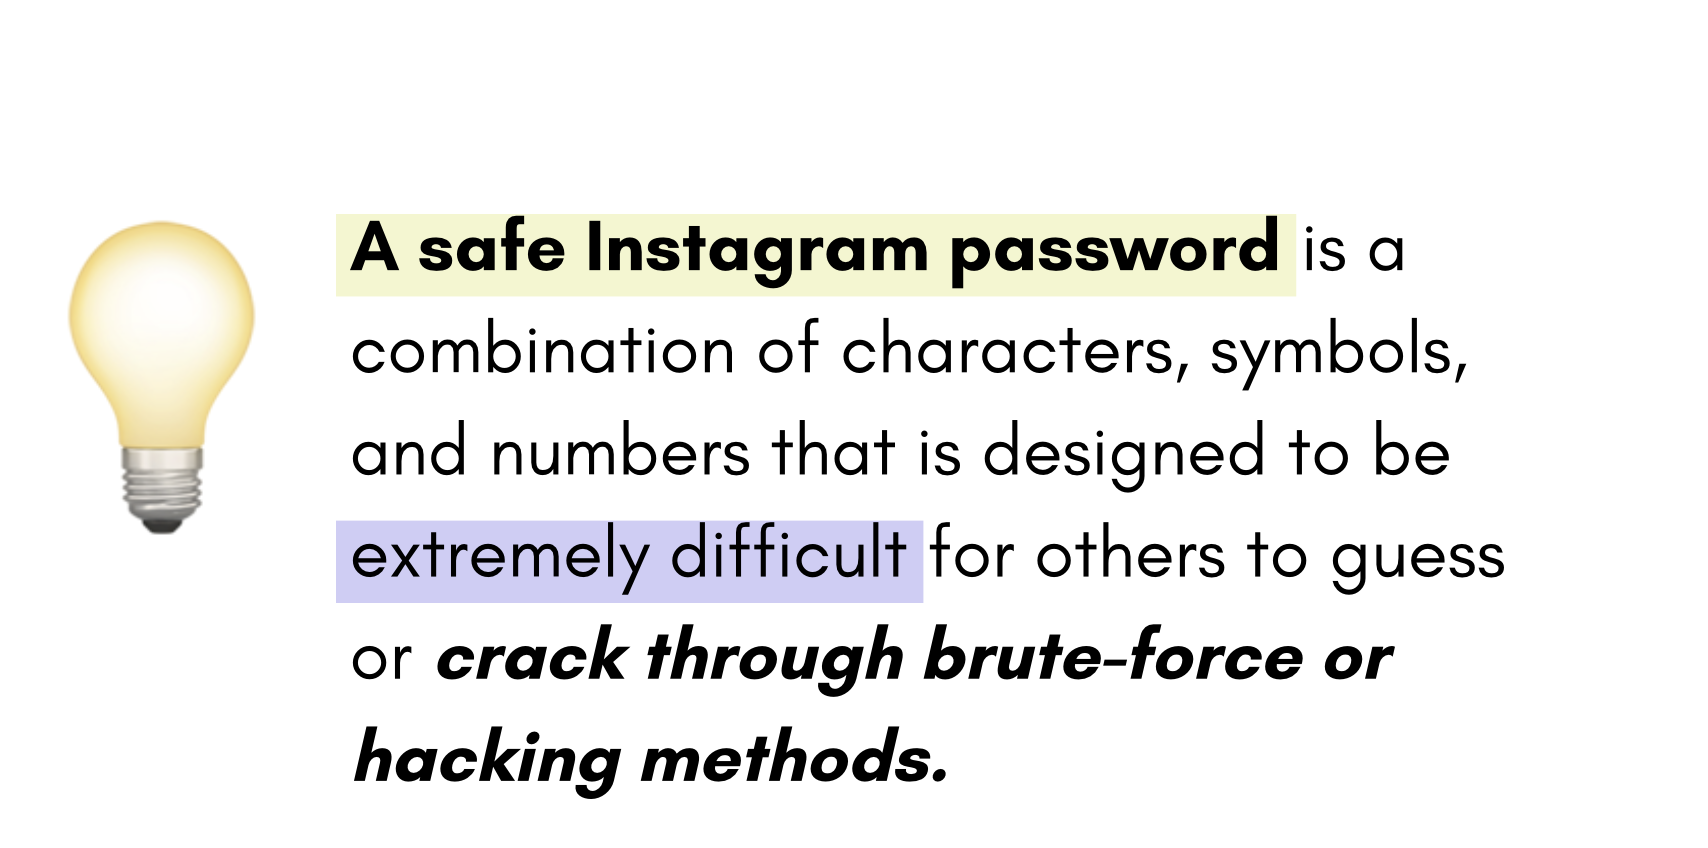 Change or Reset Instagram Password